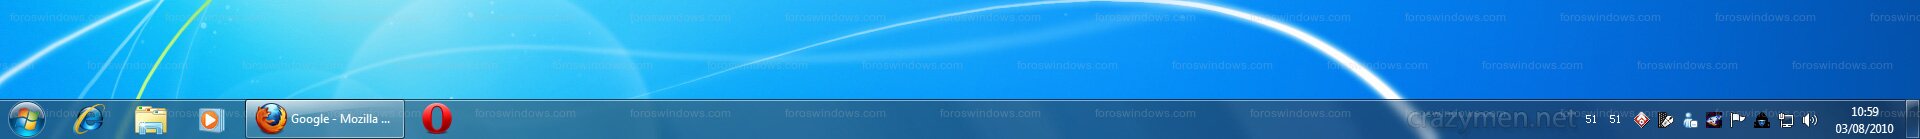 Windows 7 - Con composición de escritorio